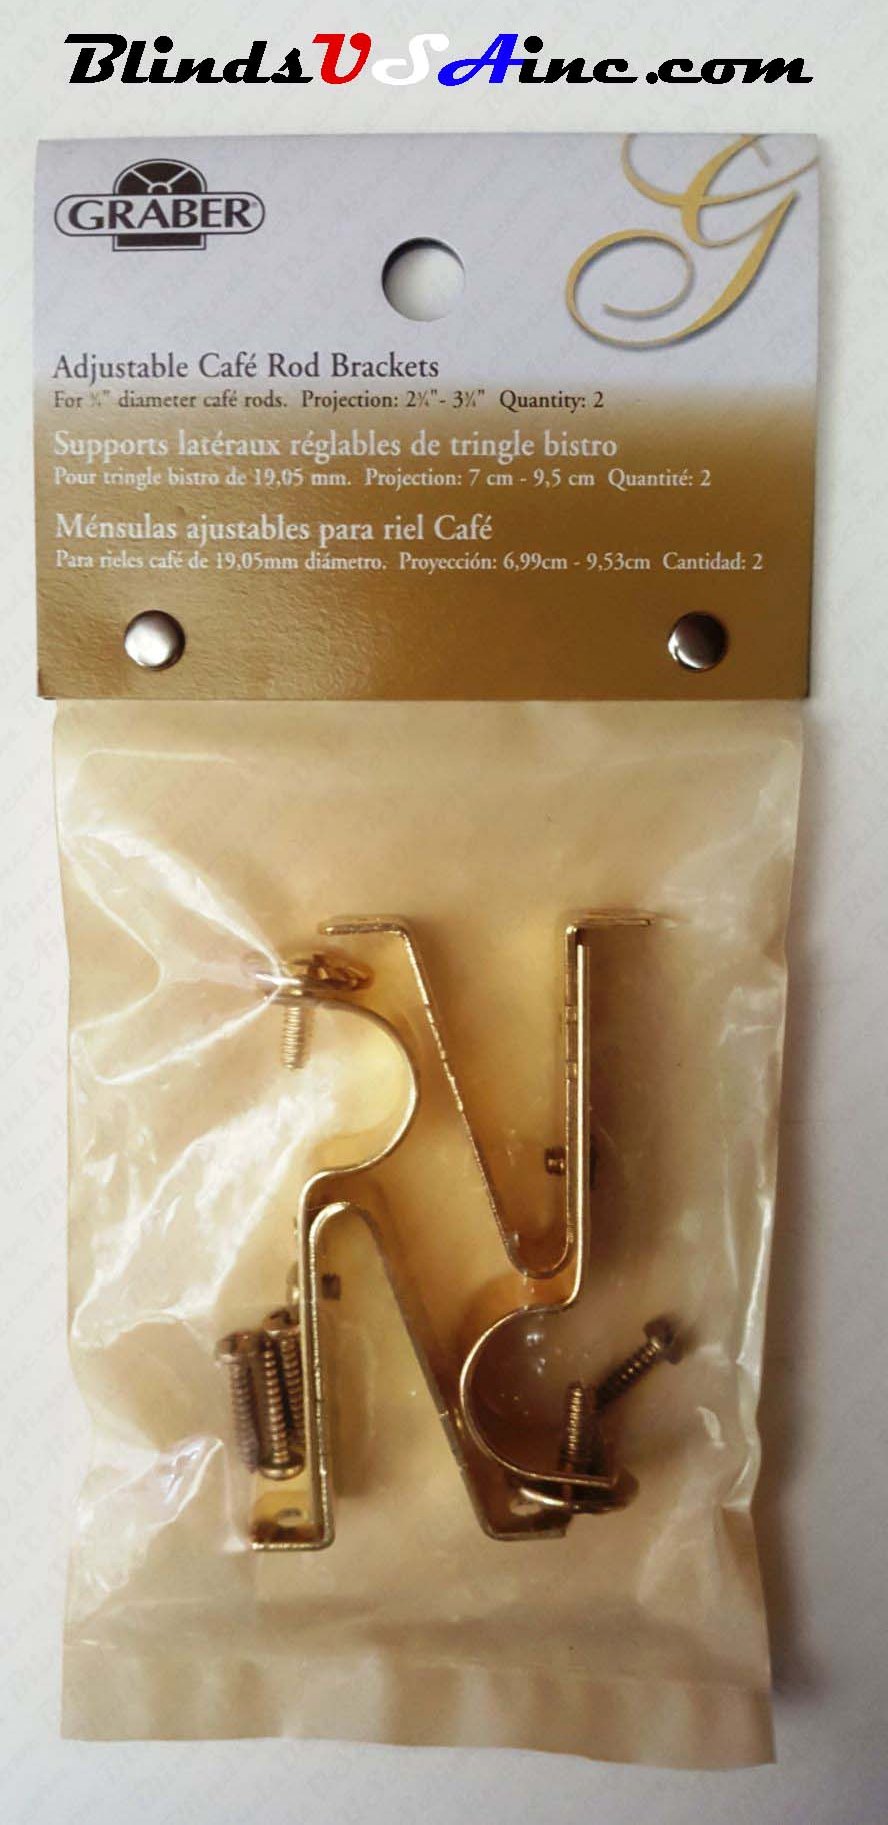 Graber 3/4 inch Cafe' Rod Brass Support Bracket,, packaged, Item # DRP-Cafe2-365-8, Part # 2-365-8